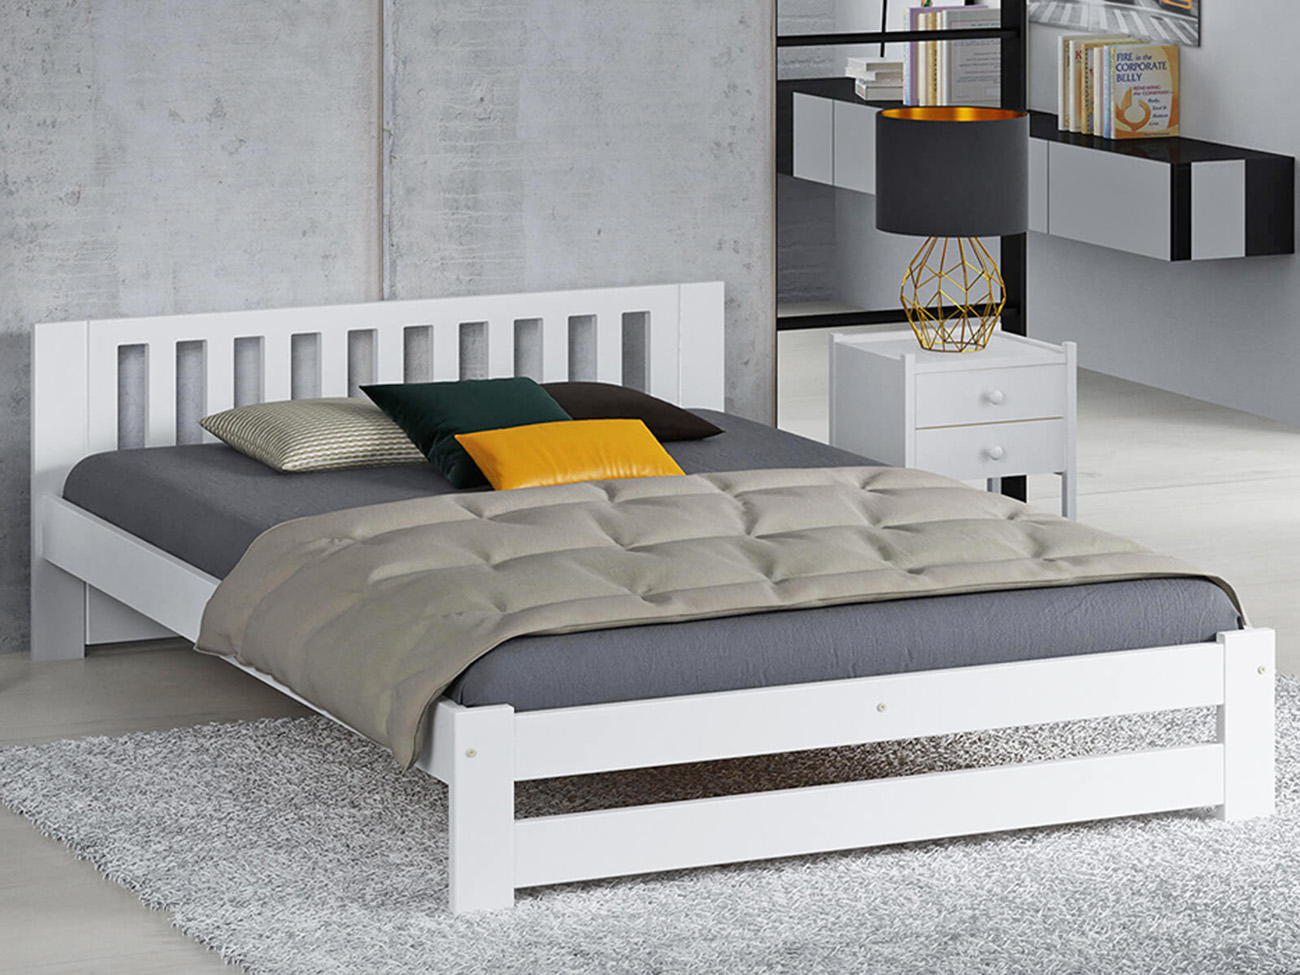 Кровать Цюрих 2 кровать соня вариант 4 с защитой по центру выкатные ящики приобретаются отдельно лаванда